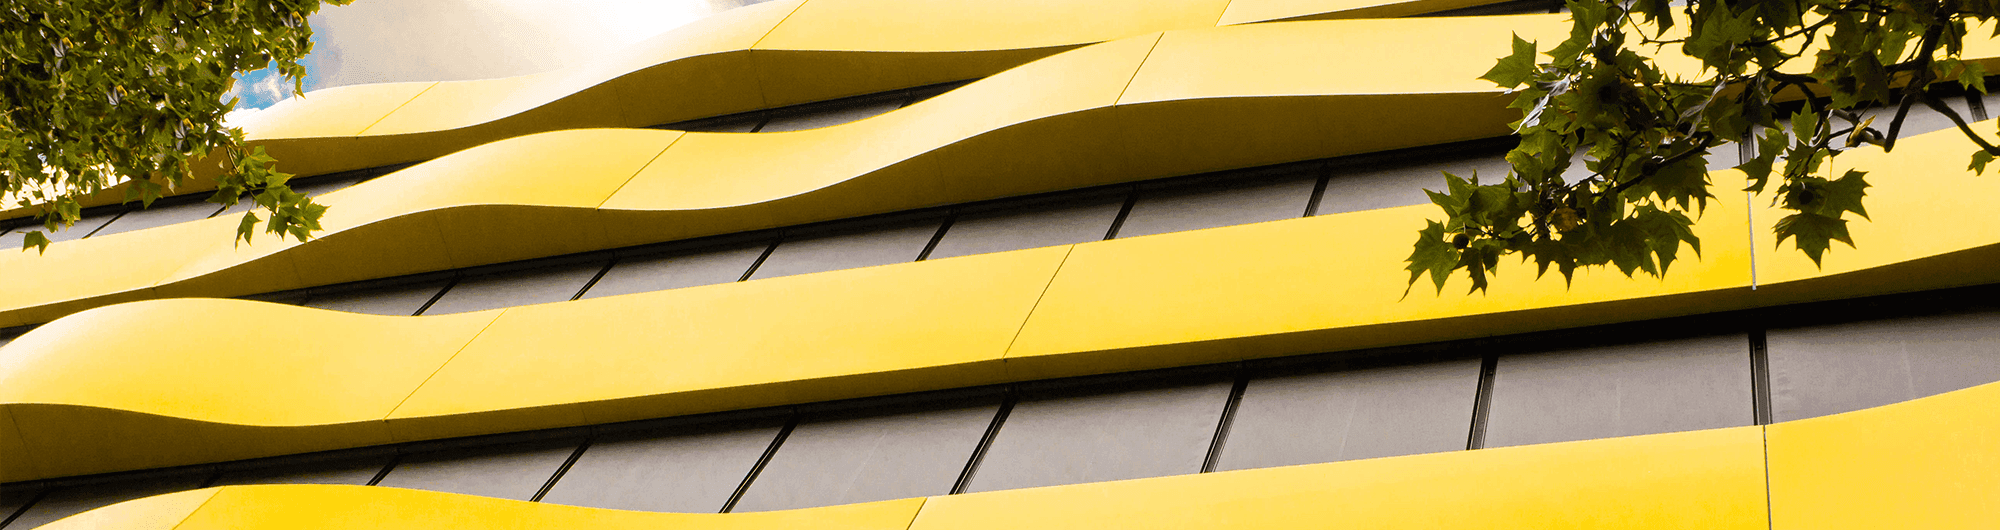 vista inferior de prédio em amarelo